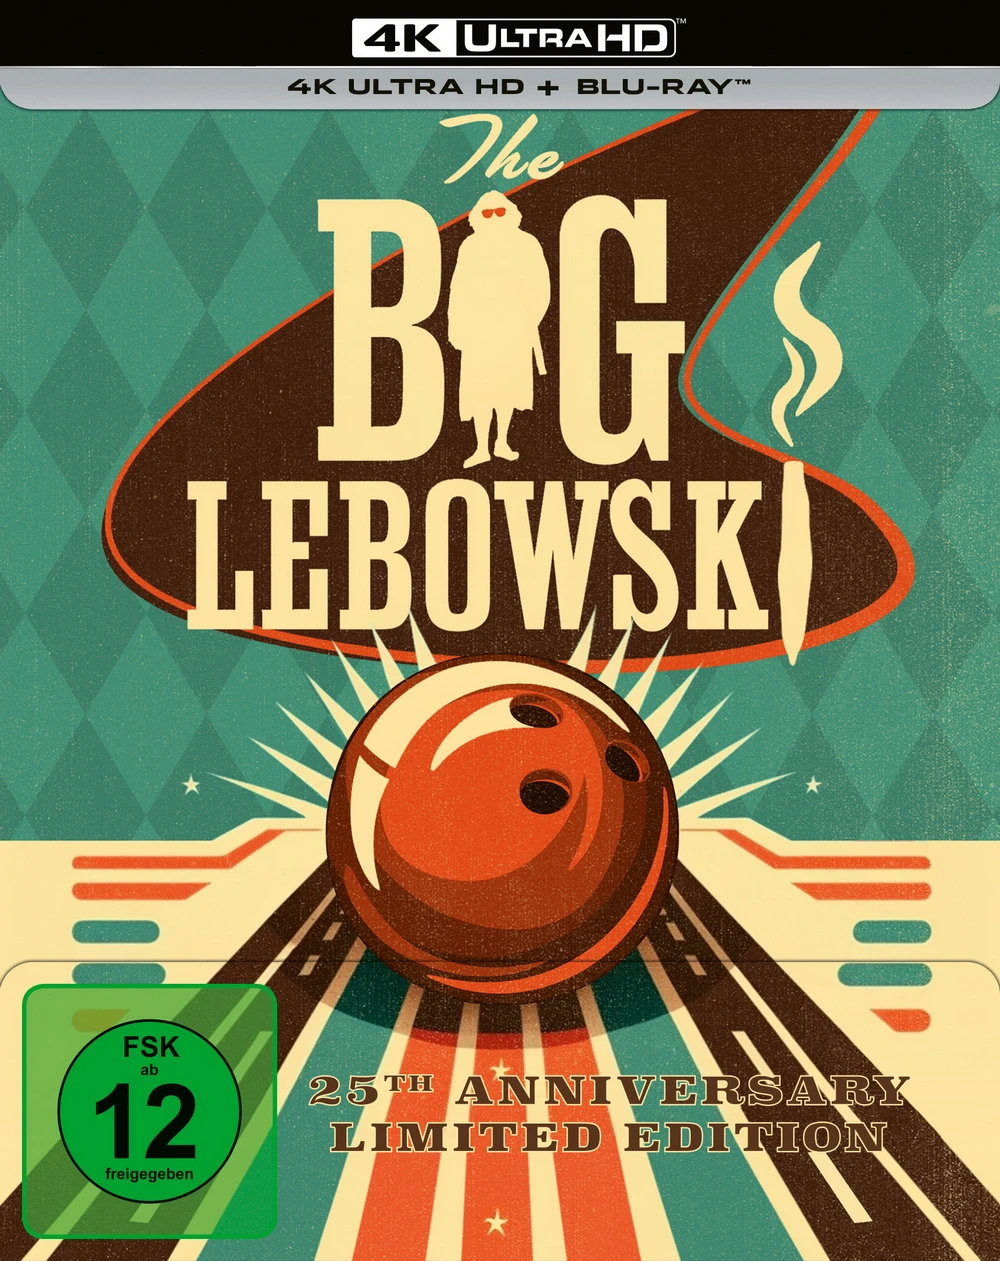 Zum 25. Jubiläum ist "The Big Lebowski" neu erschienen (© Universal Studios. Alle Rechte vorbehalten)